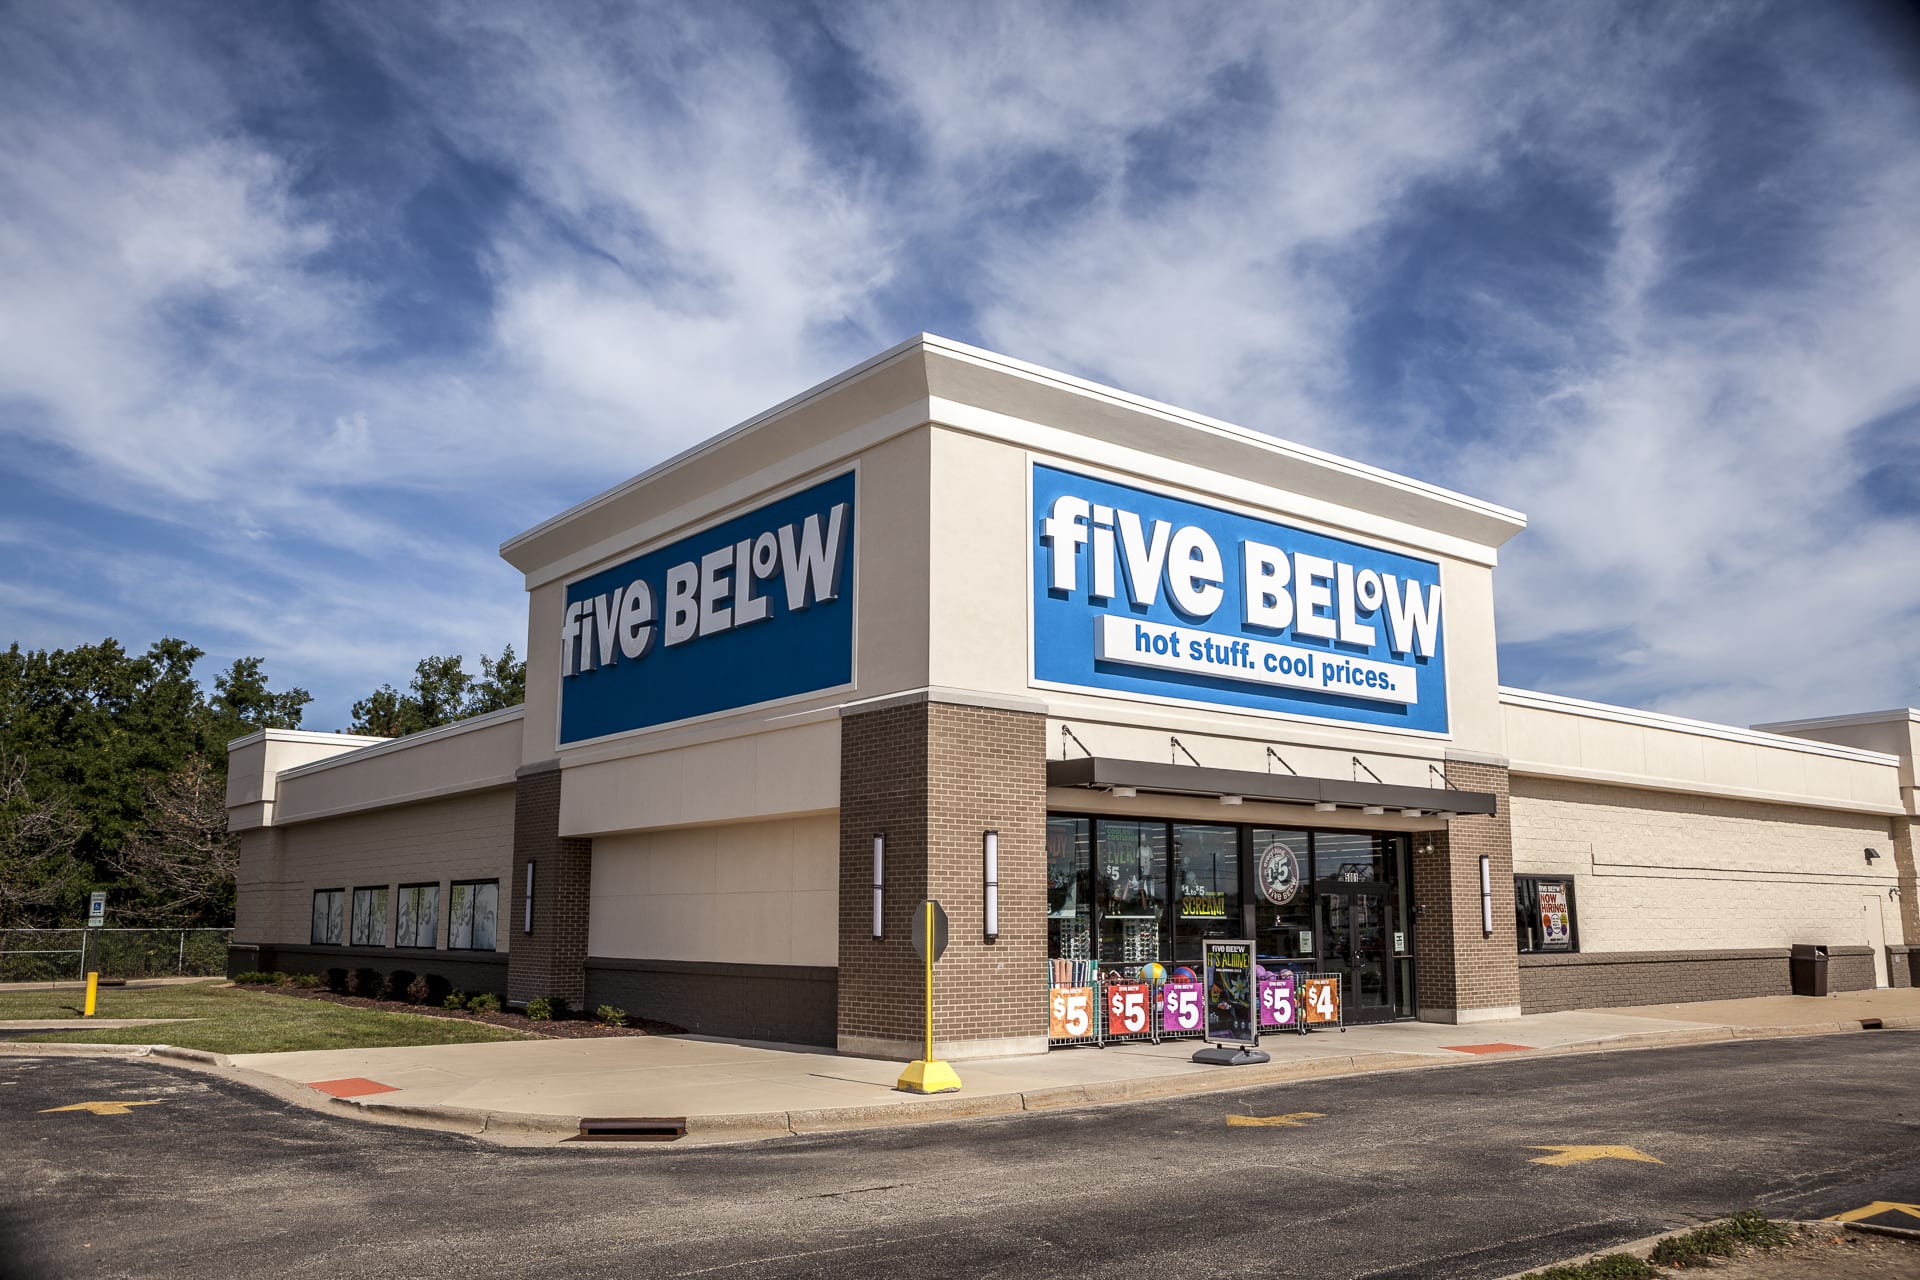 Glen Hollow Shopping Center - Five Below Retail